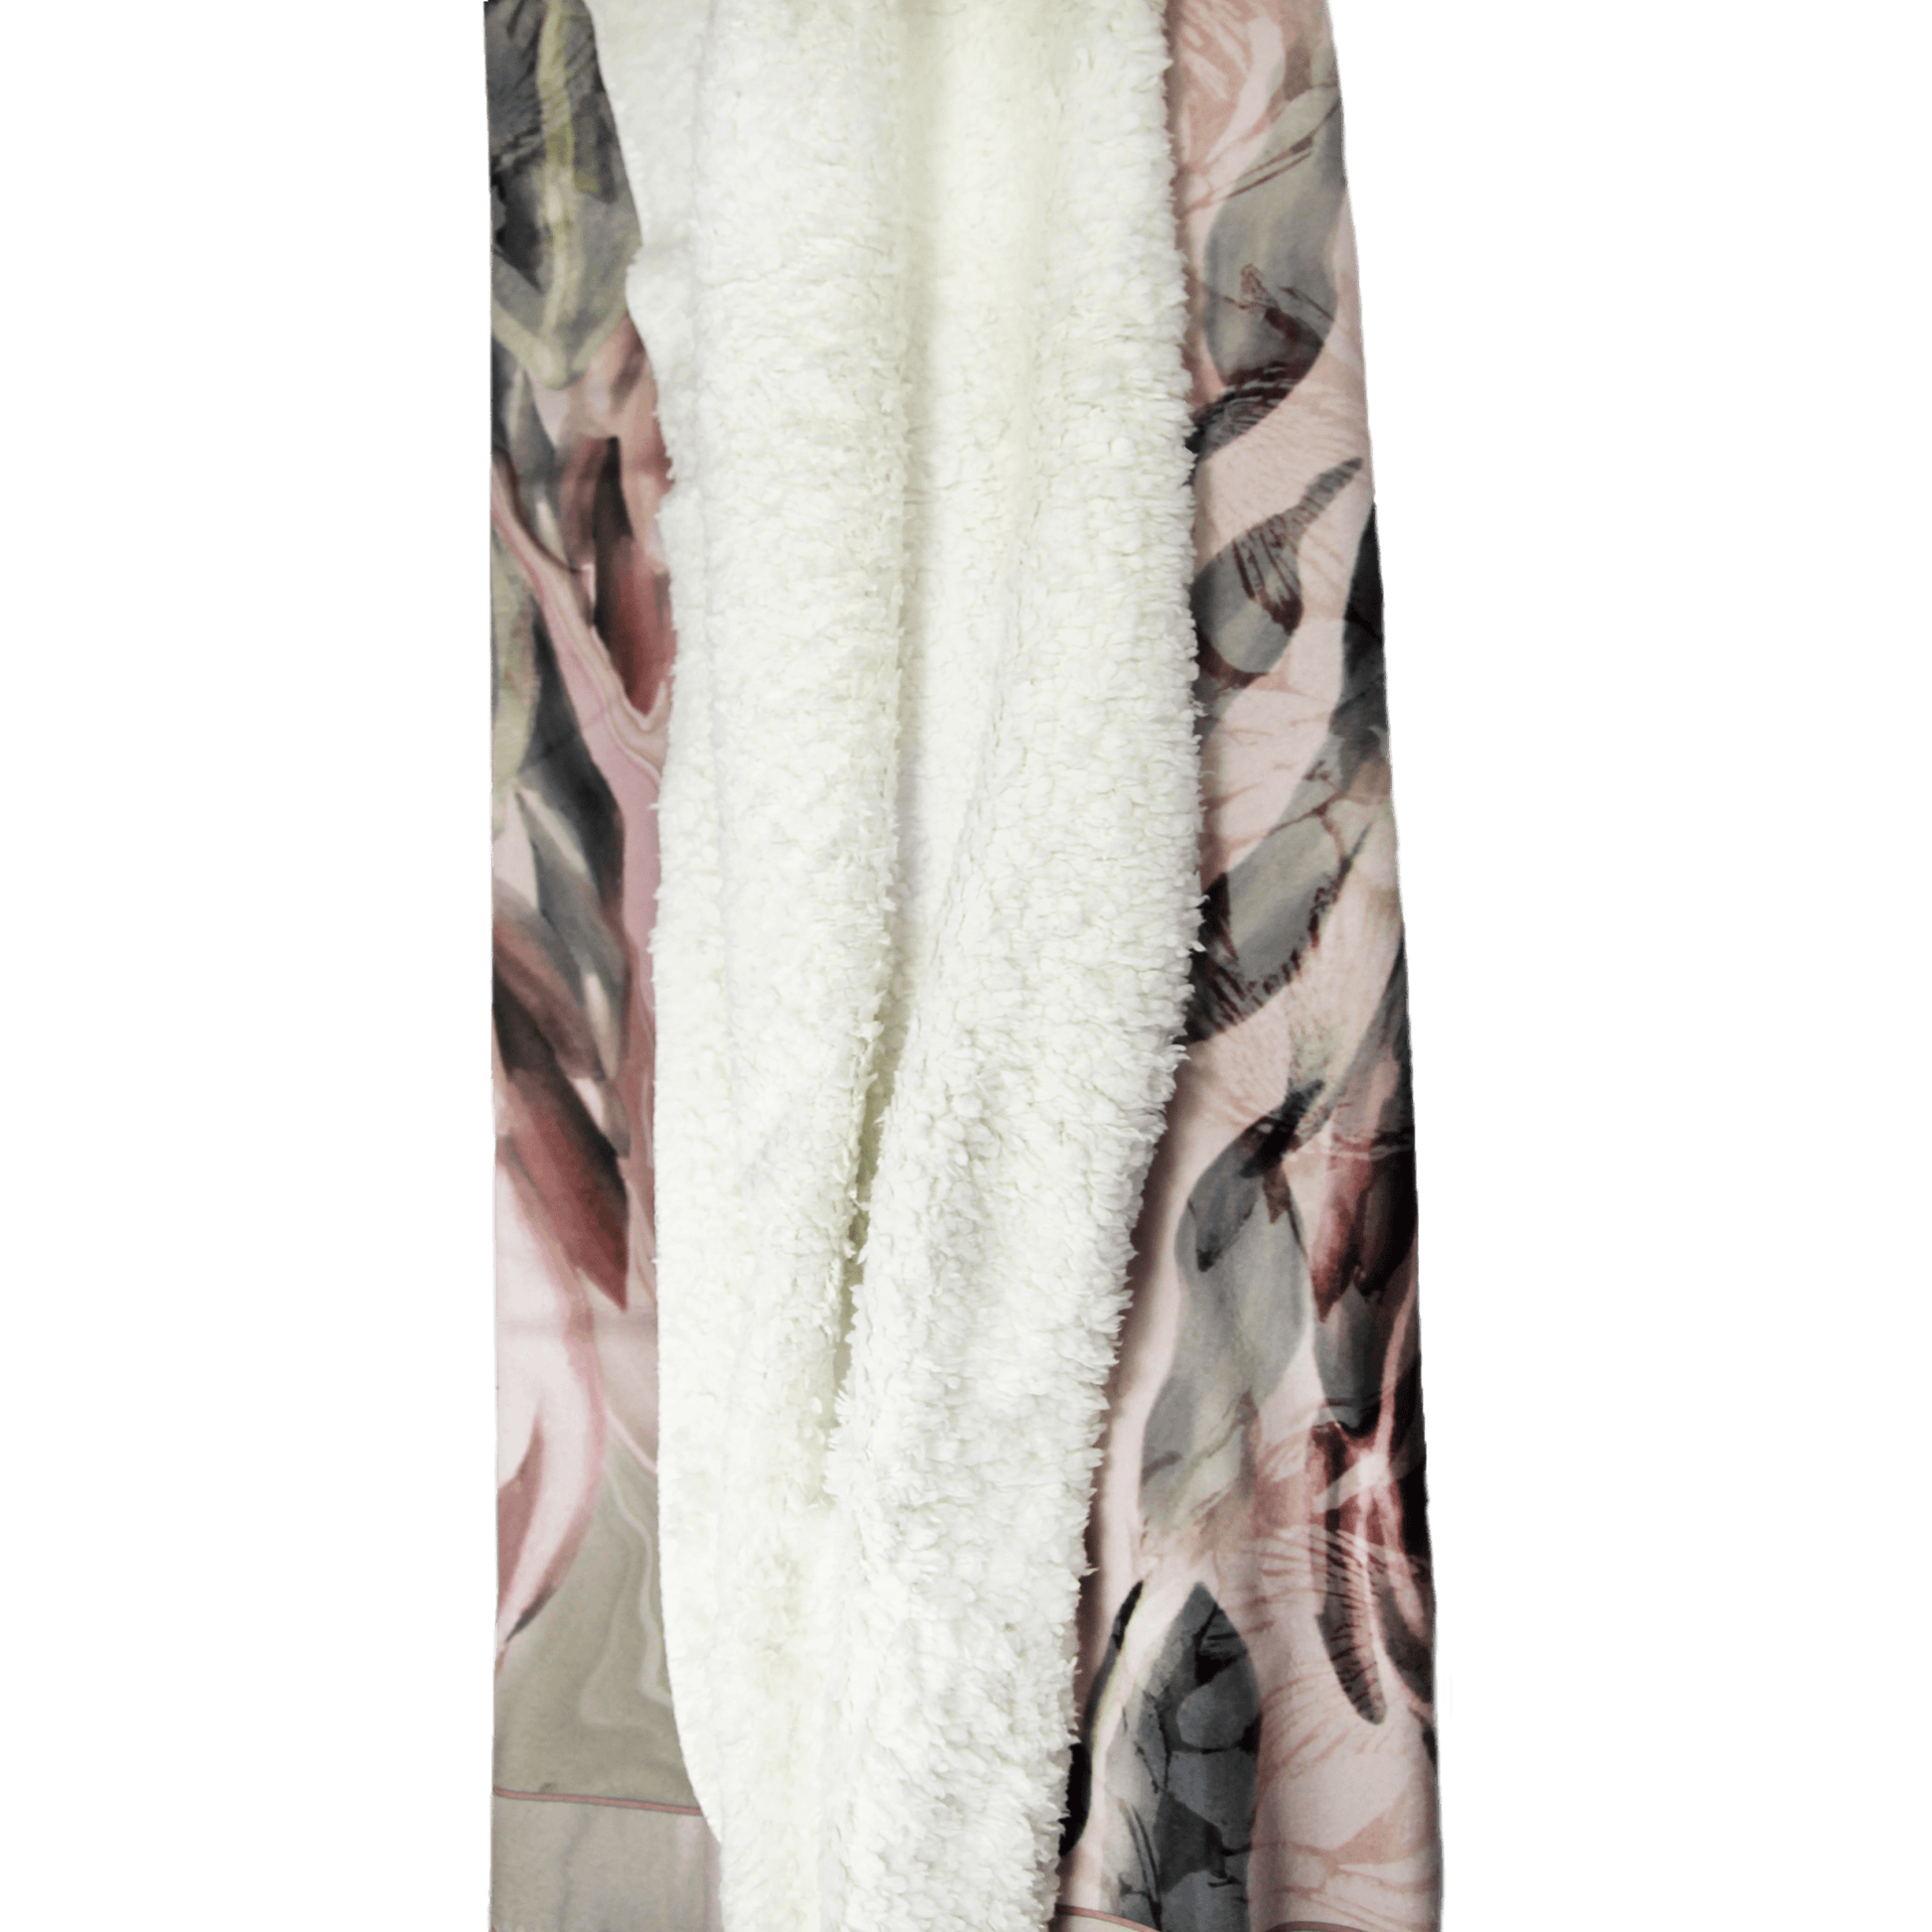 Protea Deken, teddy fleece, 100cm x 150cm